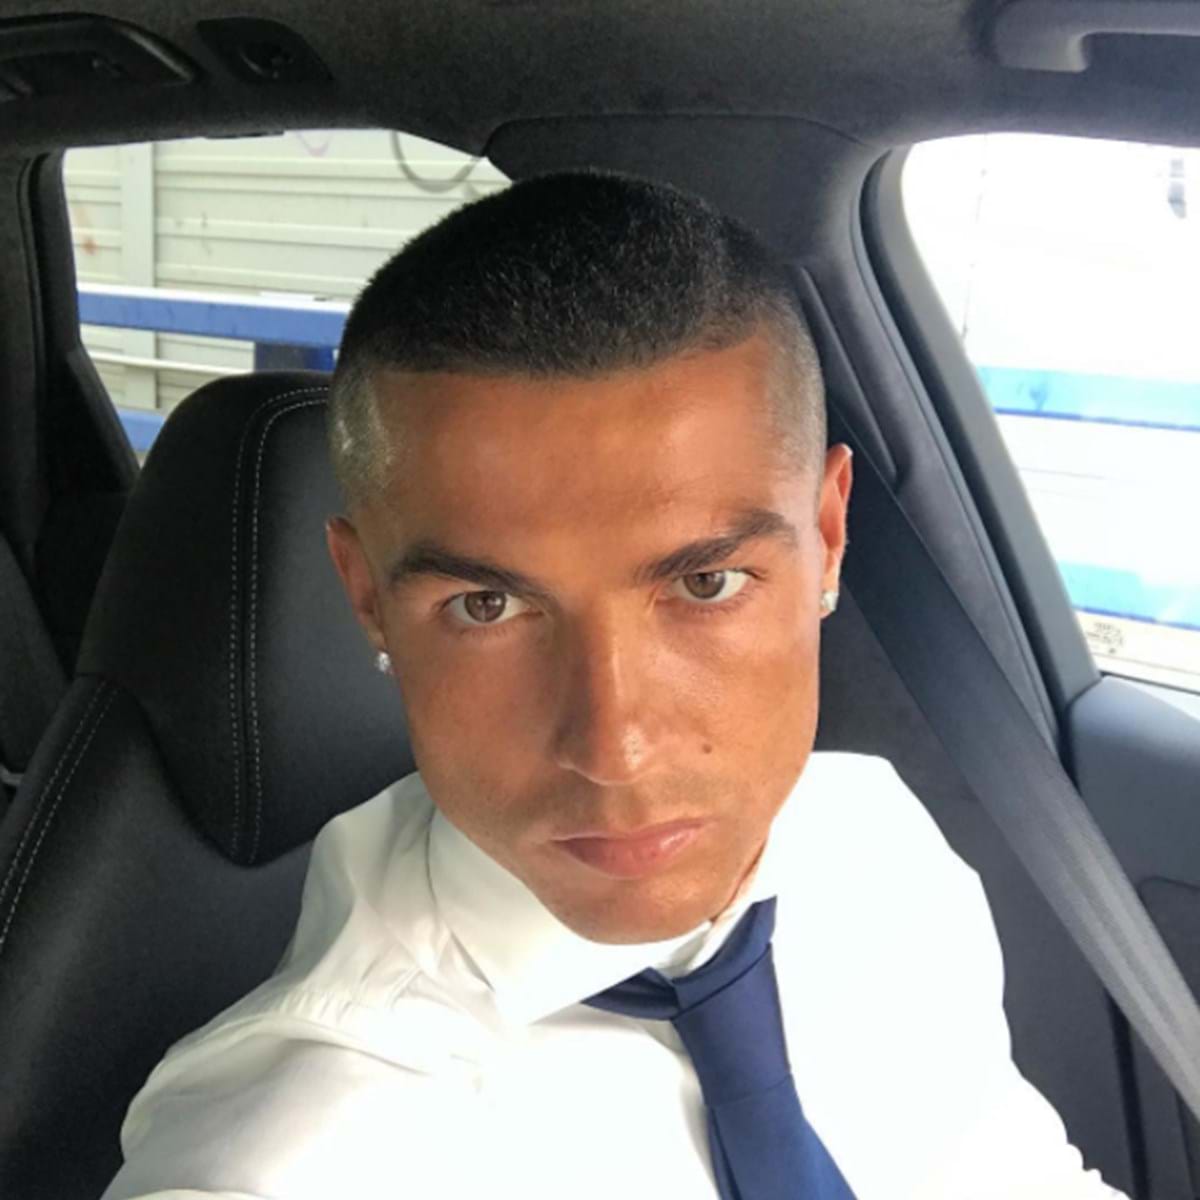 Penteado de Cristiano Ronaldo dá que falar - a Ferver - Vidas